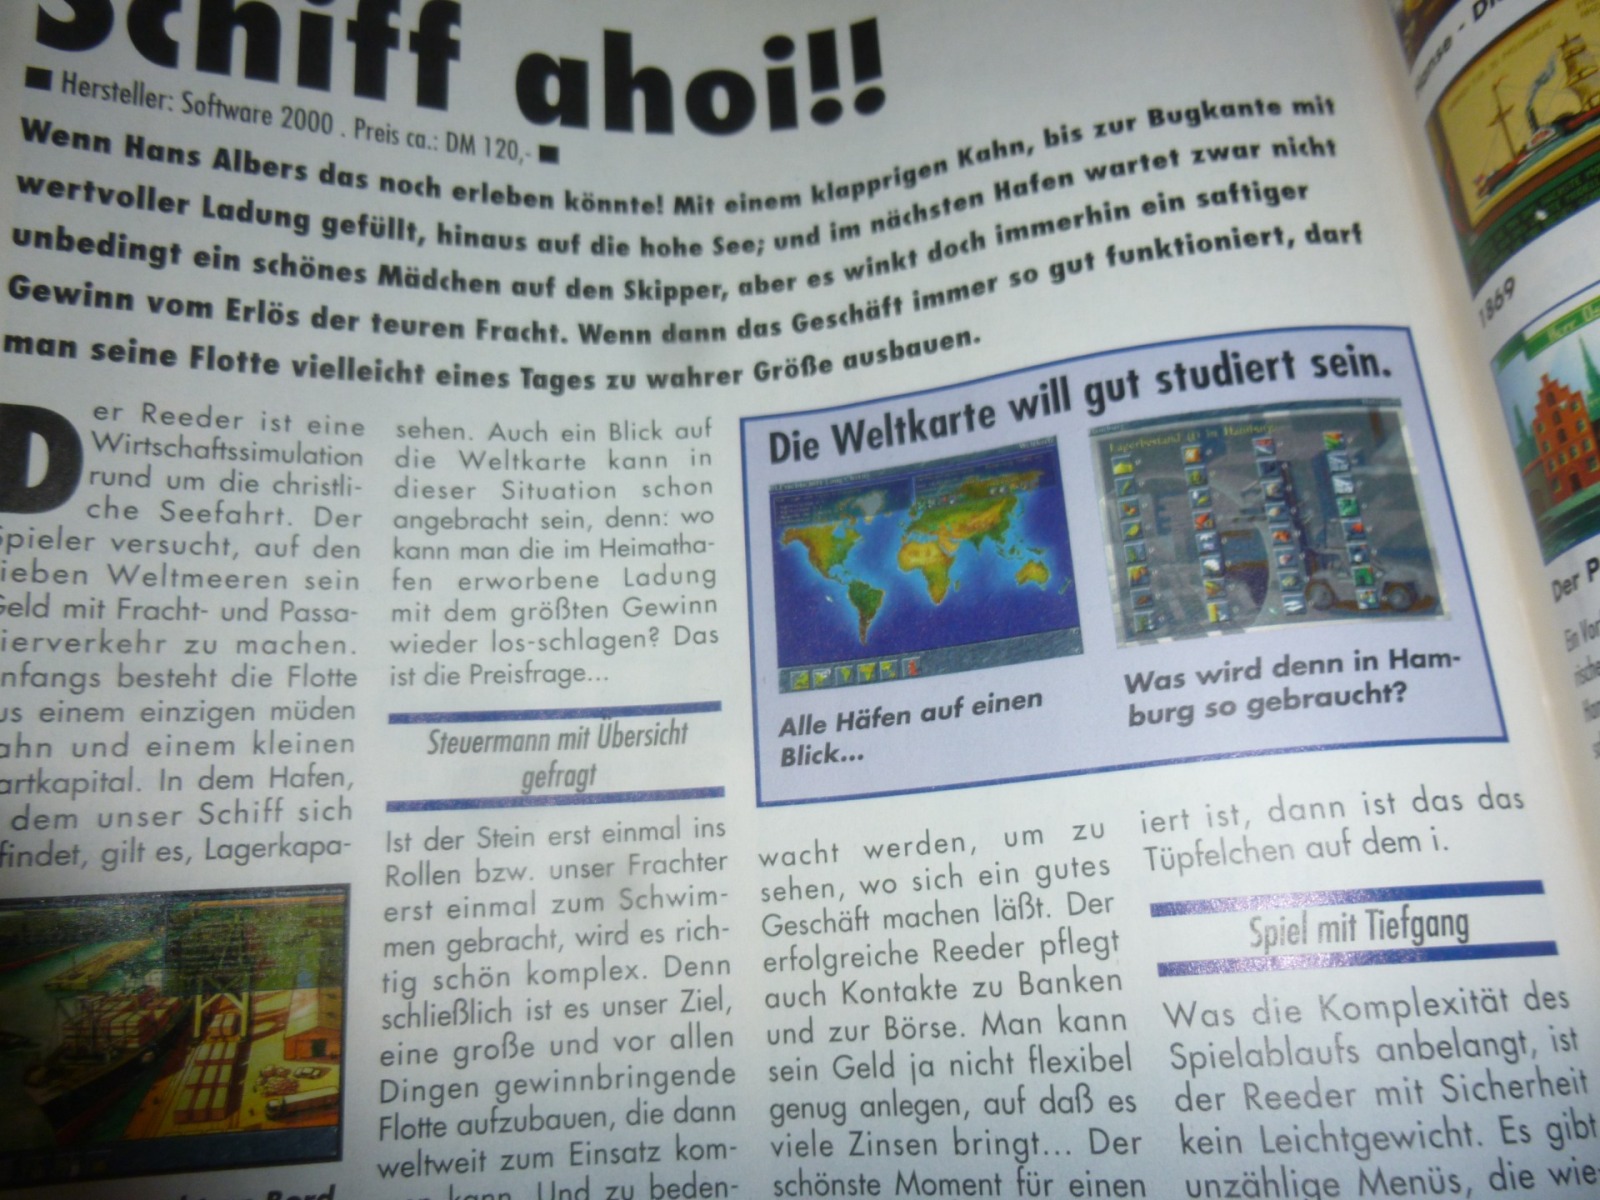 Play Time - Das Computer- und Videospiele-Magazin - Ausgabe 7/95 1995 10